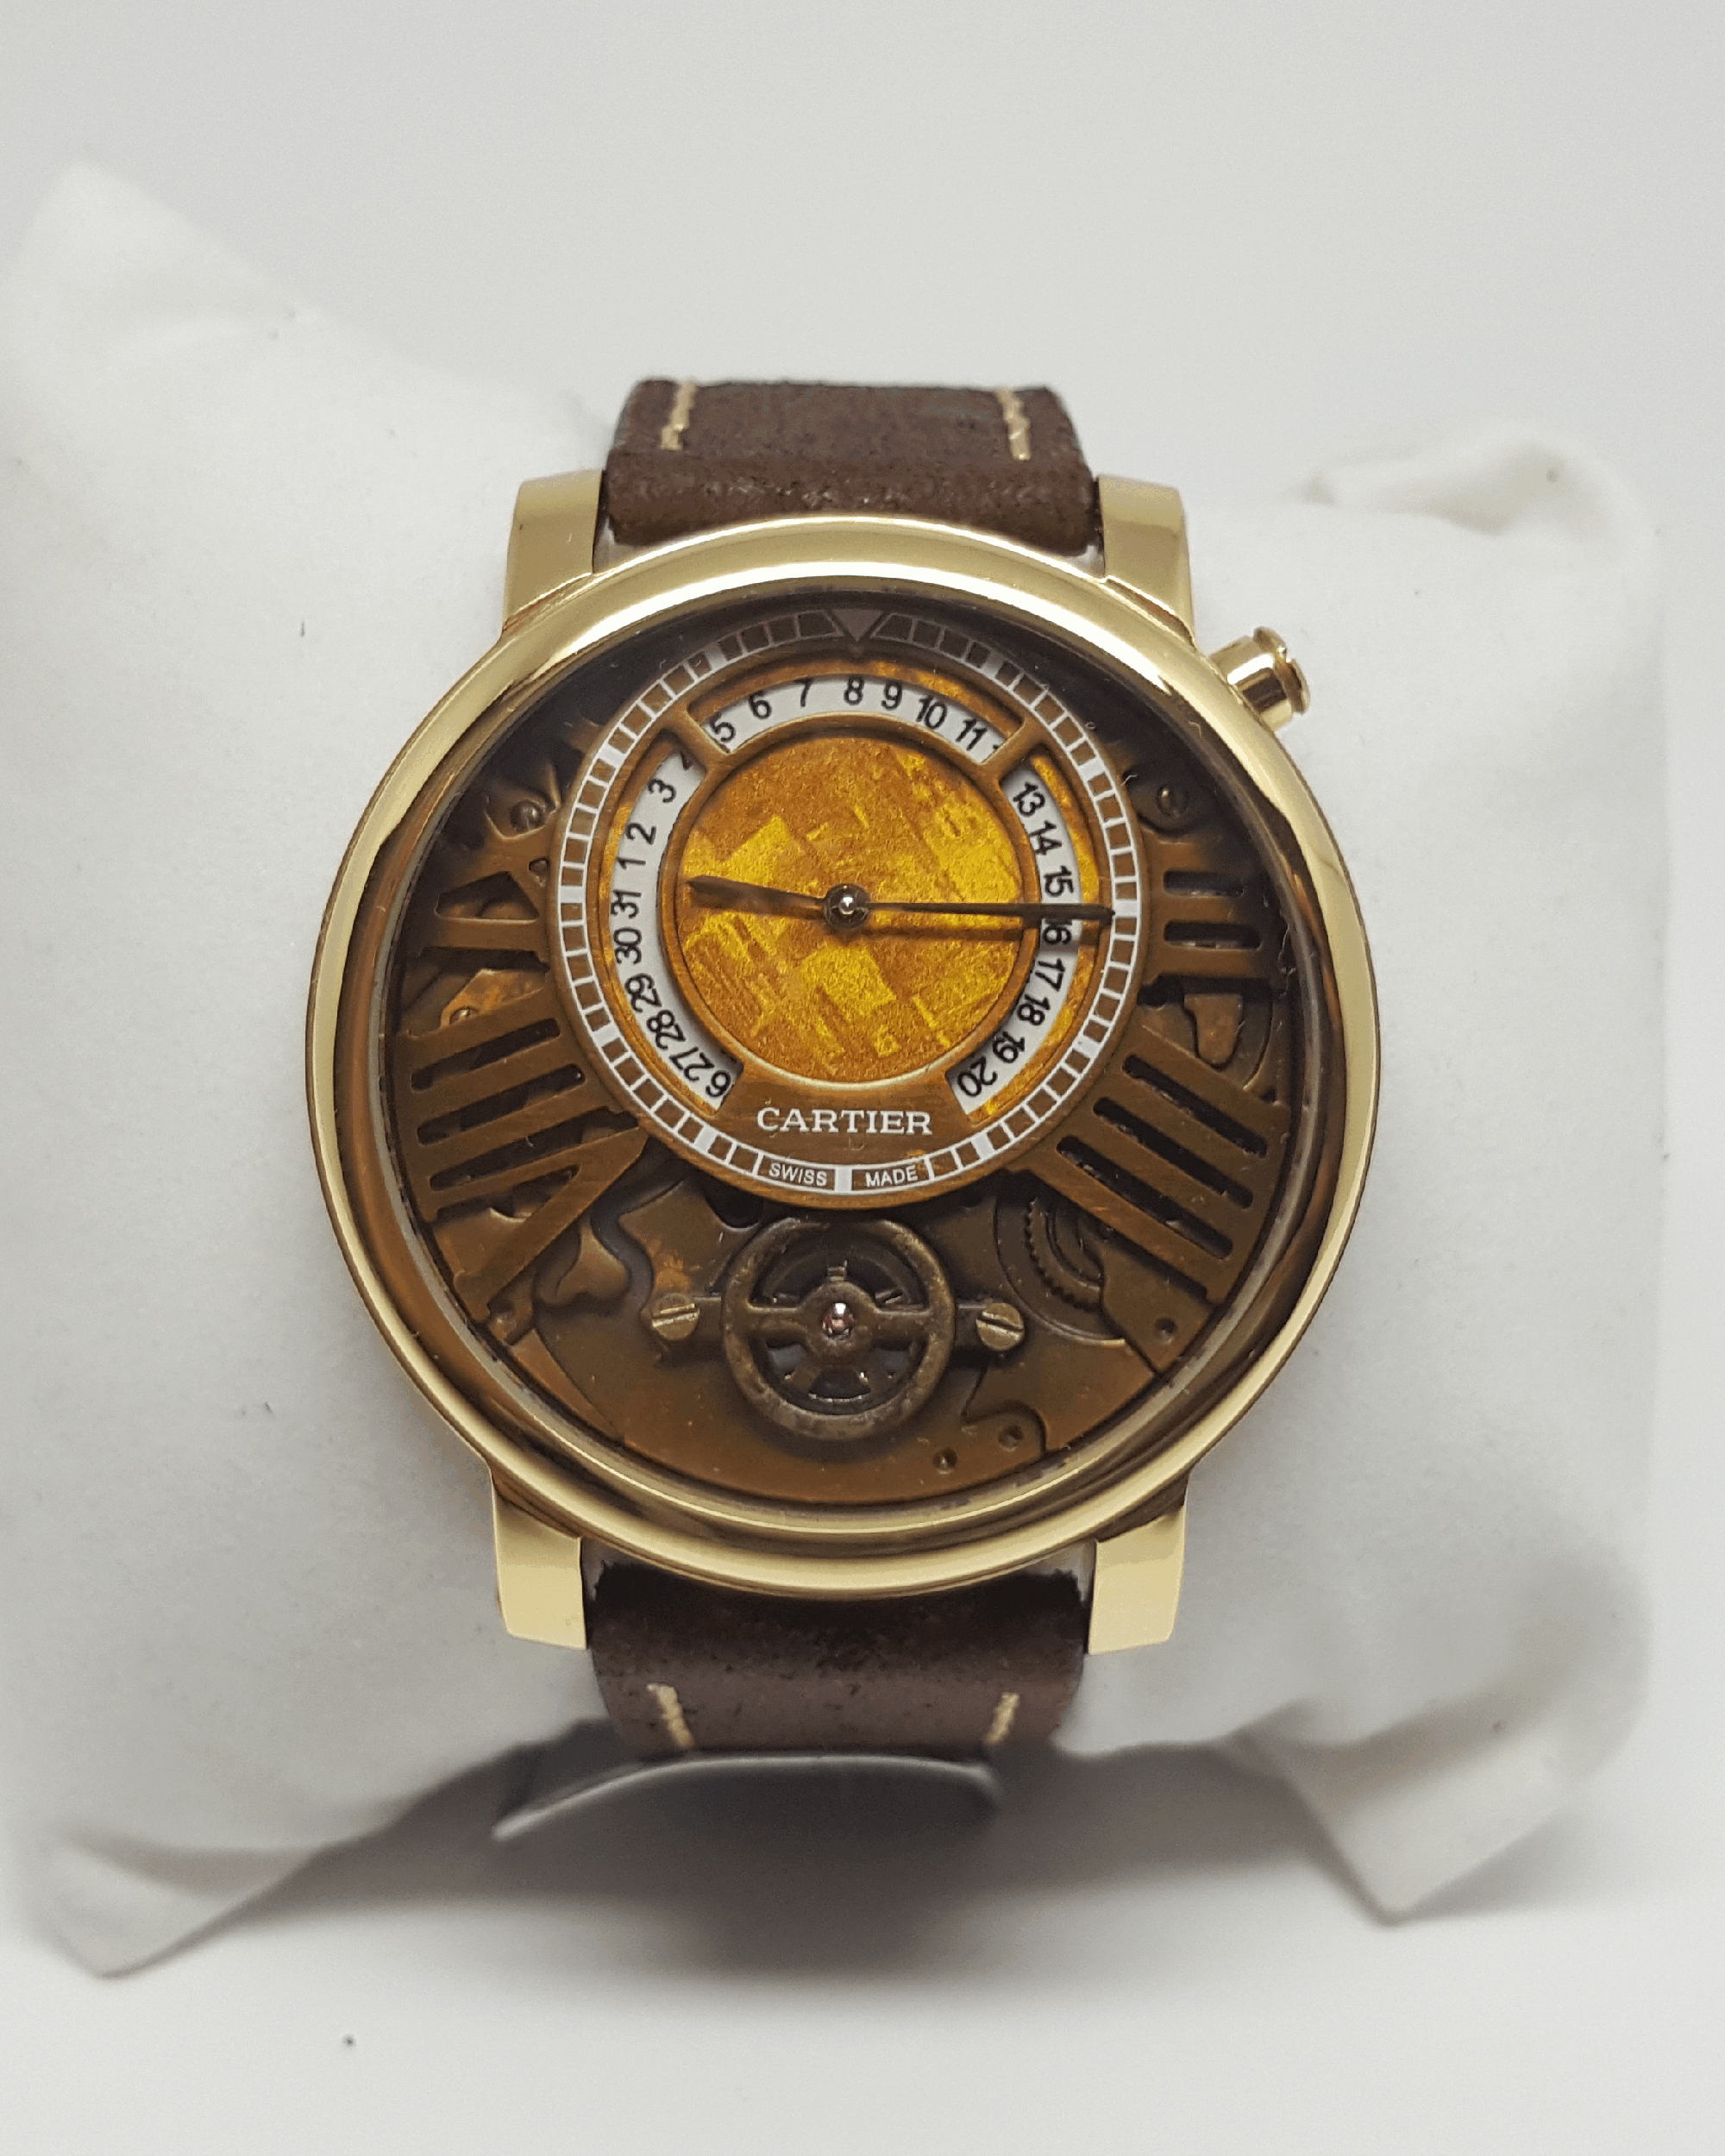 Replica de Relógio Cartier AU750 Couro